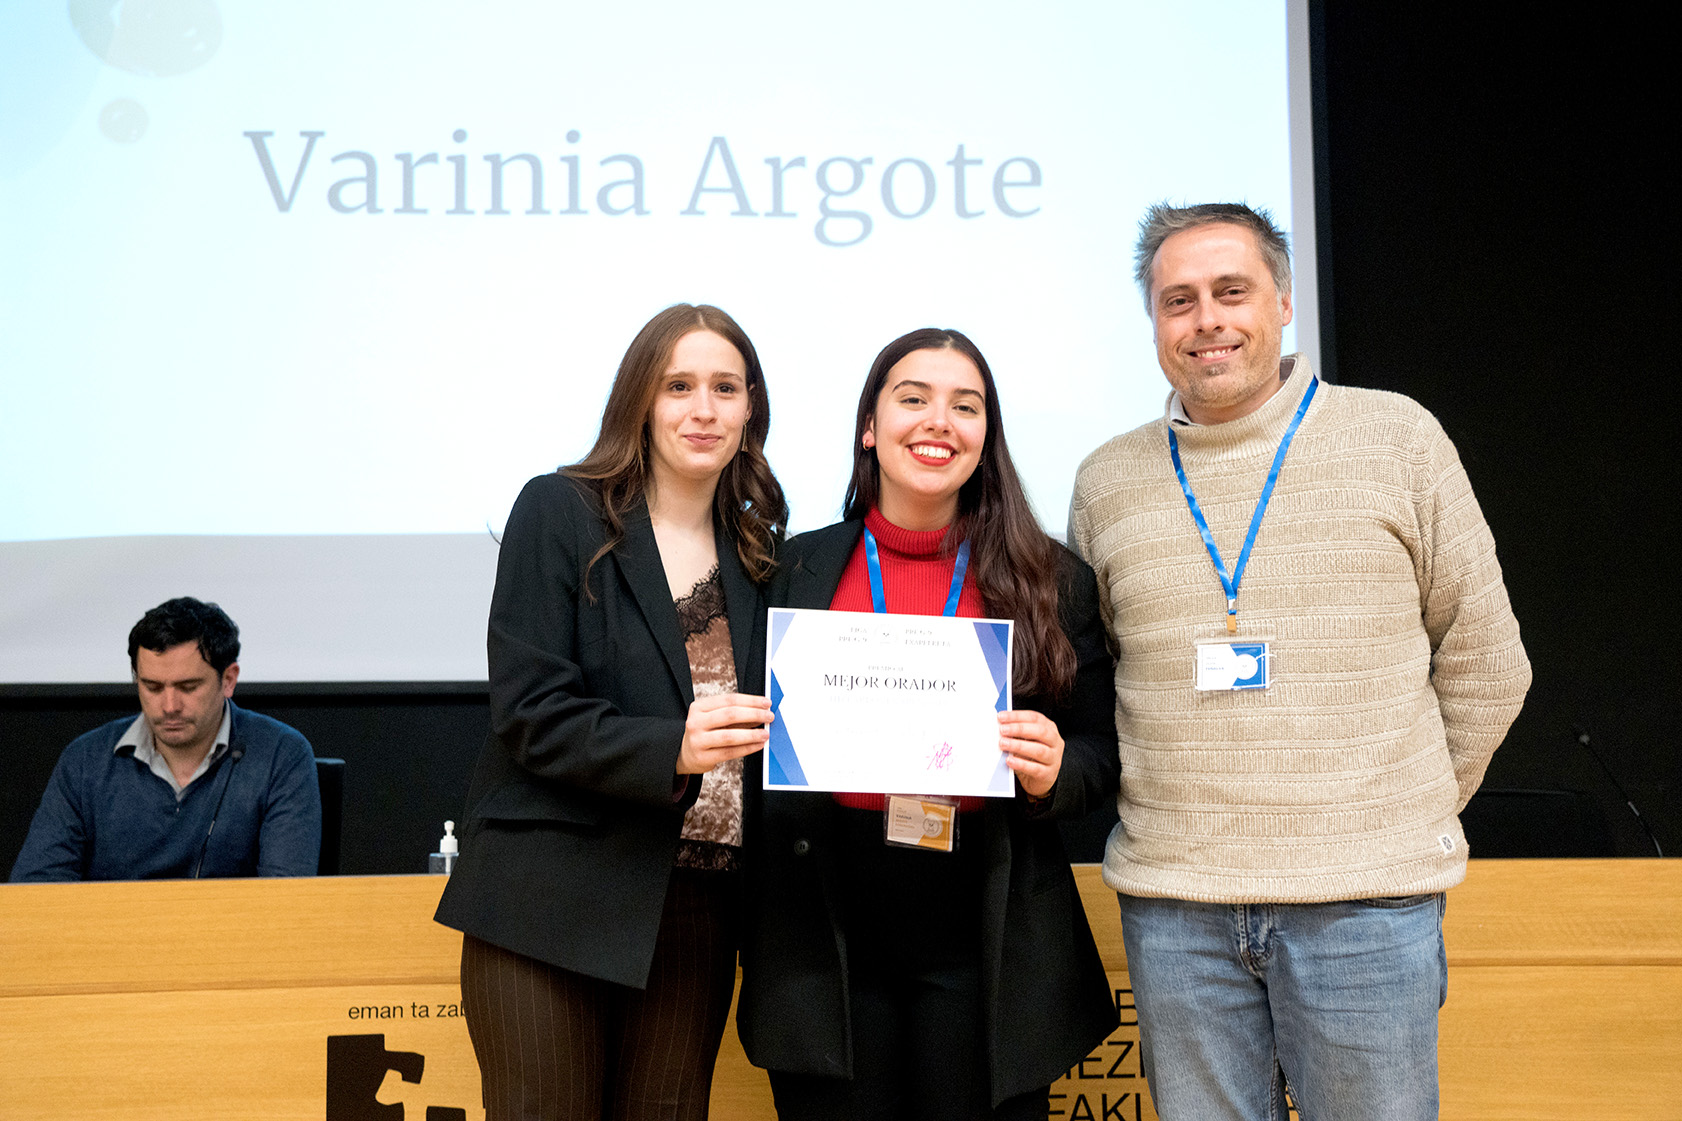 Varinia Argote ha sido elegida para participar en el concurso de mejor discurso del G-9.